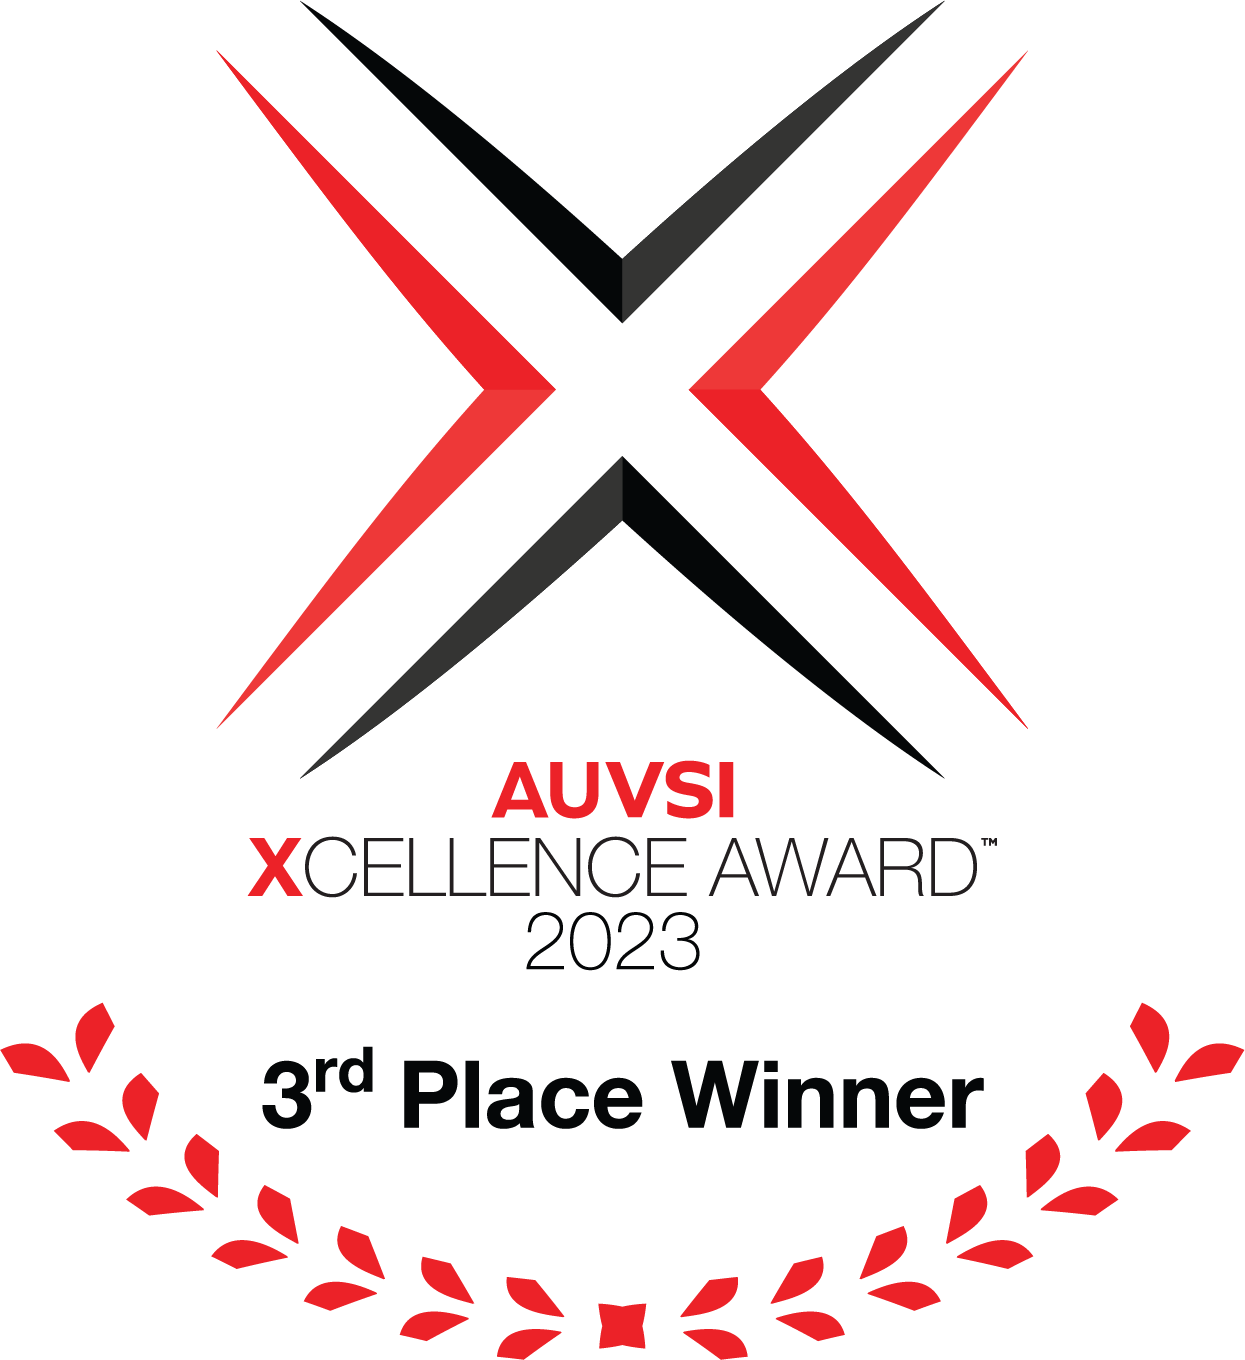 AUVSI XCELLENCE Award 2023 Winner